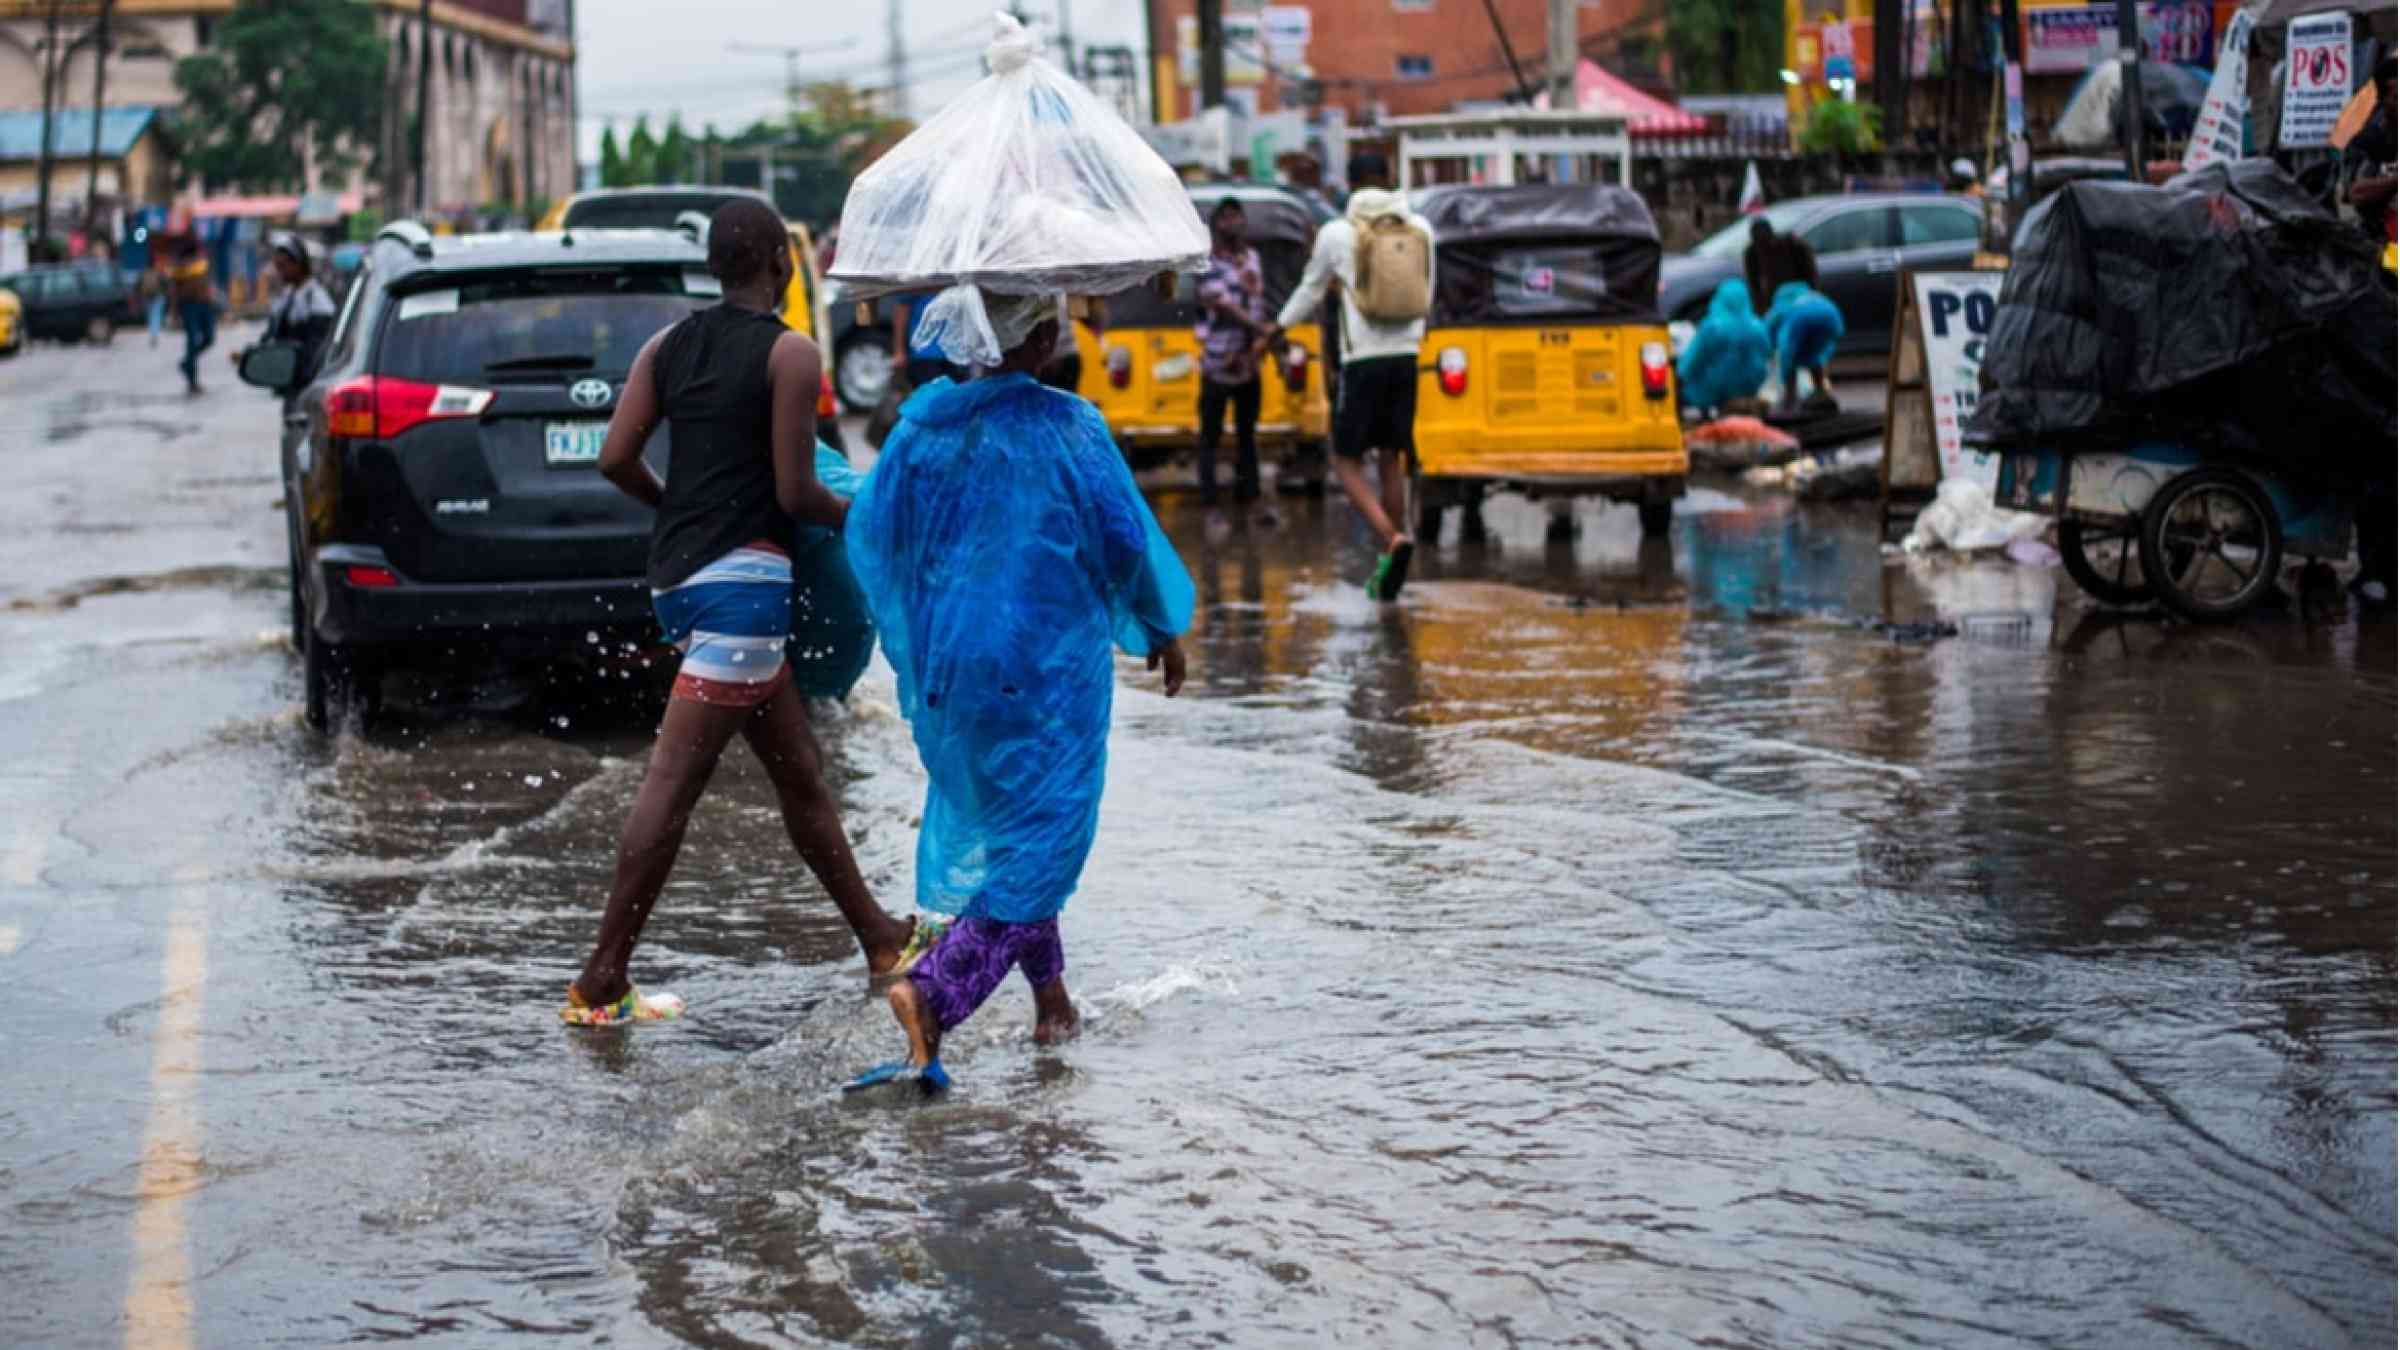 Two women walking through the flooded streets of Lagos, Nigeria.